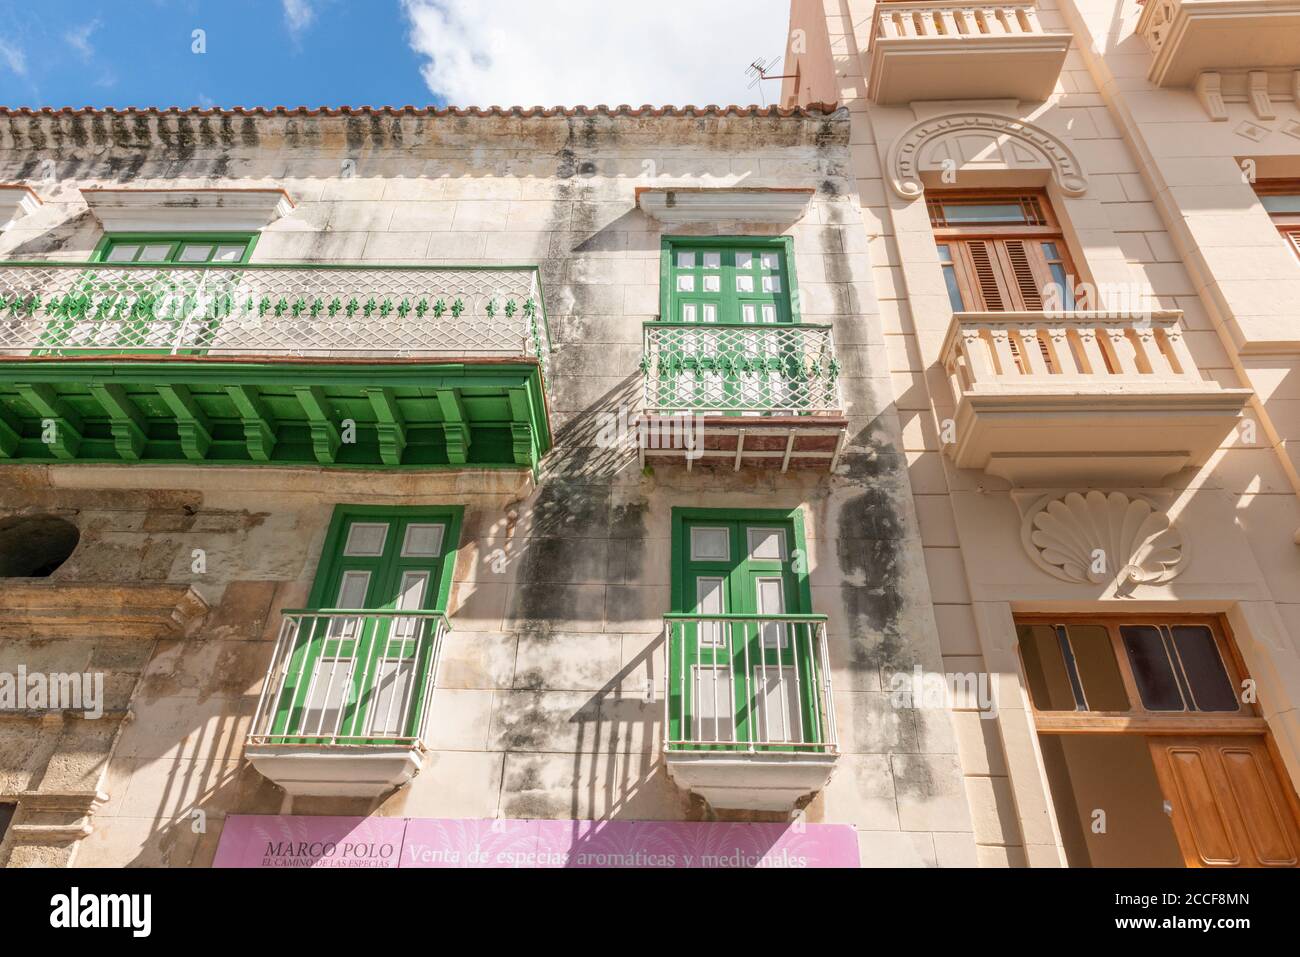 La Havane, Cuba, façade de maison avec balcons, style colonial, vue de fond, perspective, rue commerçante Banque D'Images